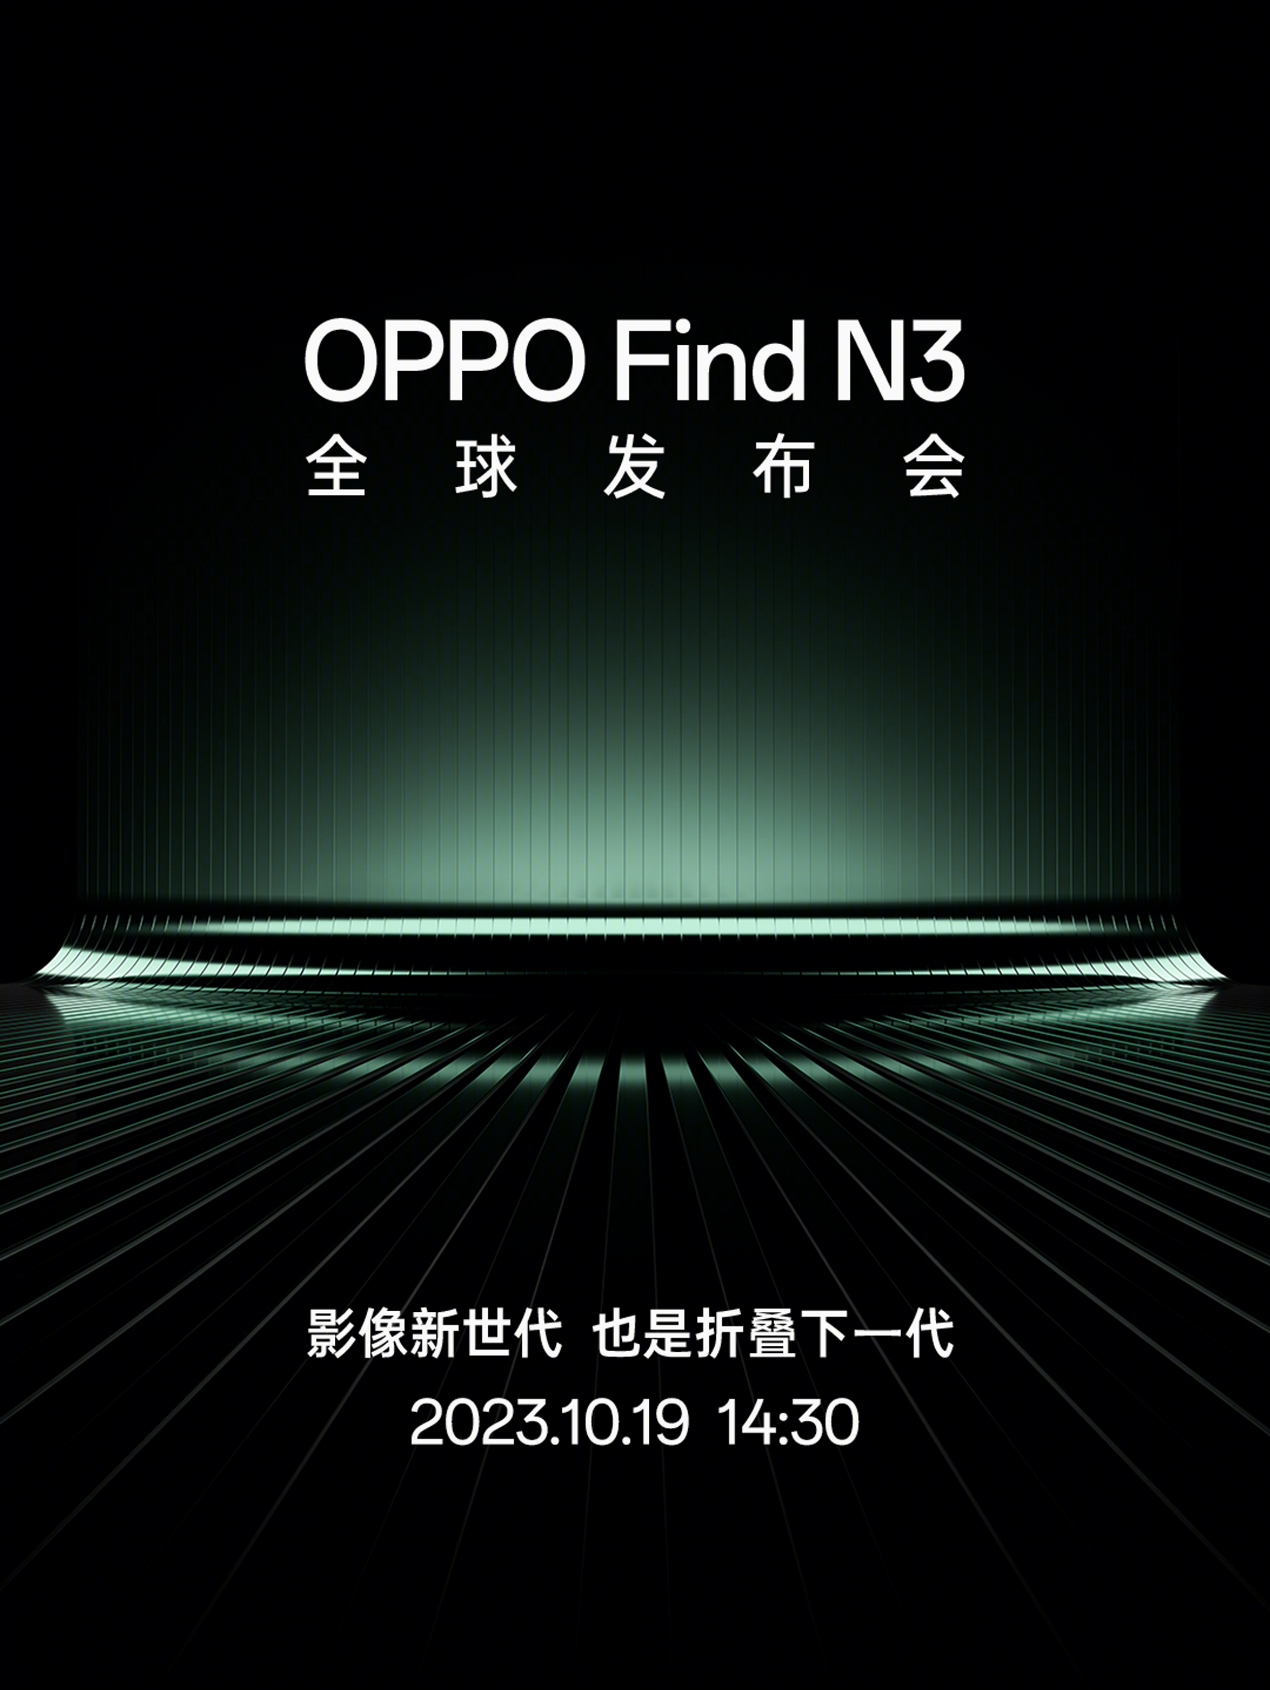 超强隐私保护！OPPO Find N3内置独立安全芯片，一键进入“孤岛”